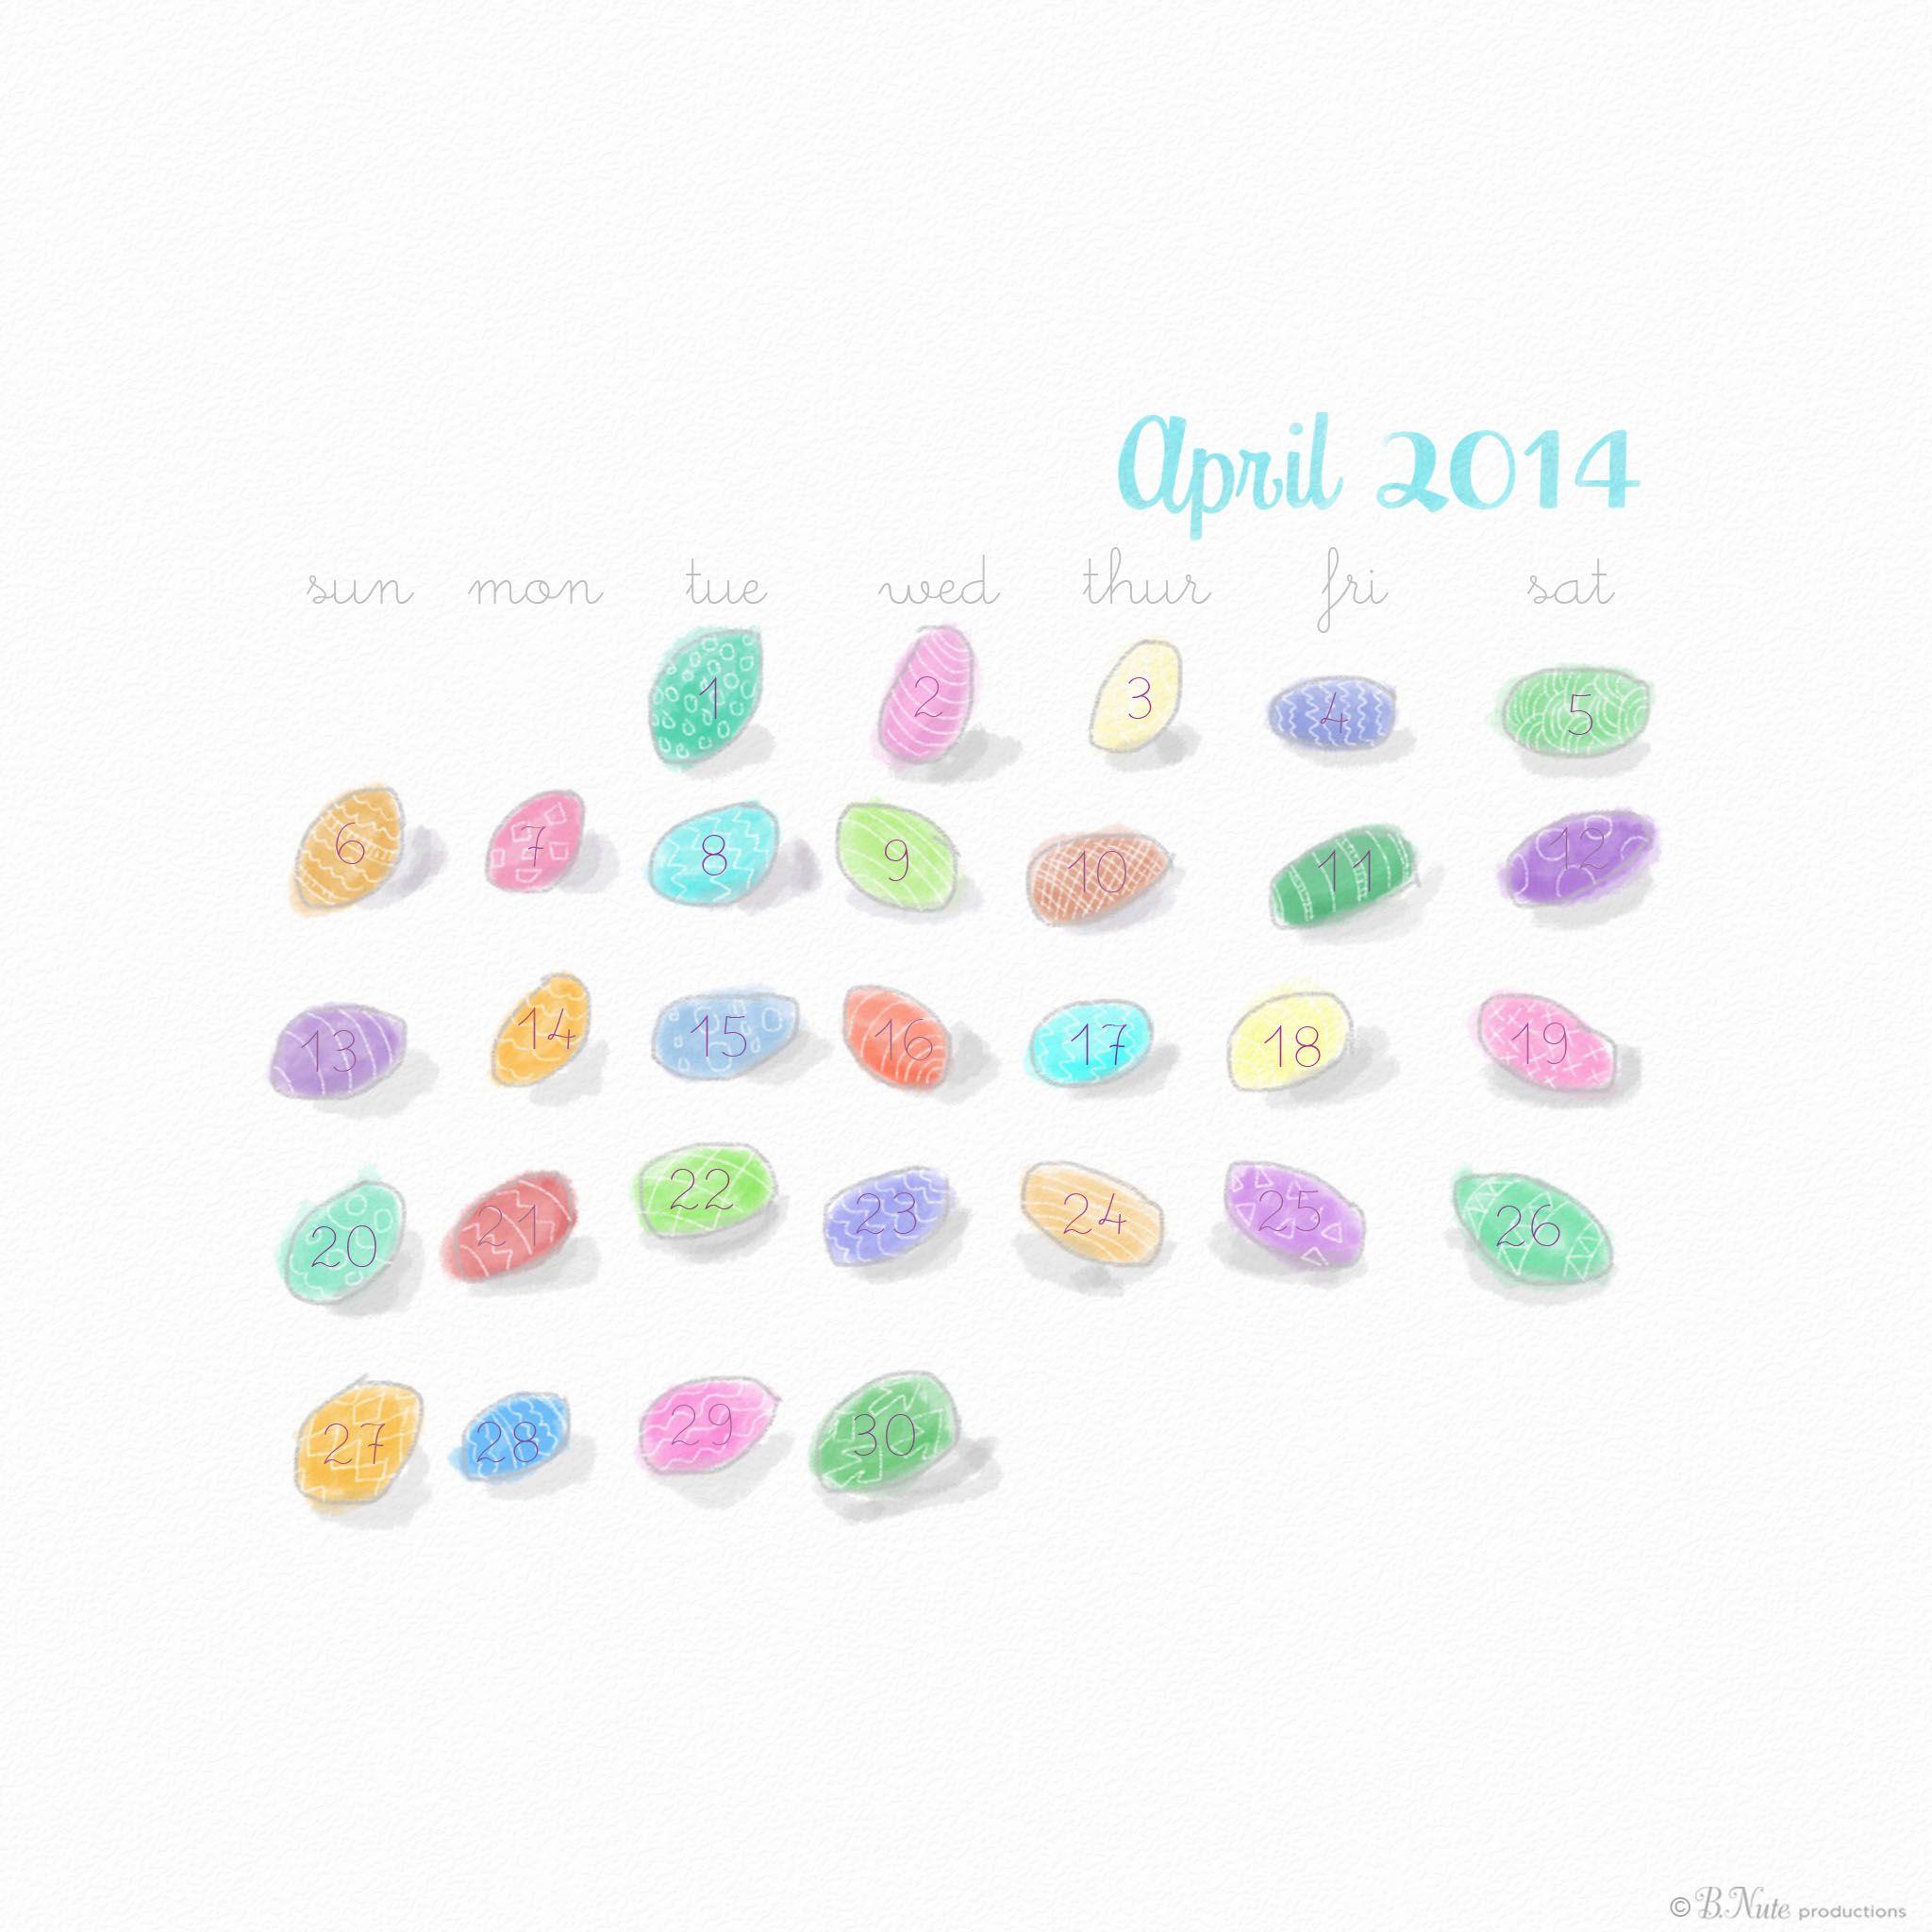 2048x2048 tỷ sản phẩm: Miễn phí tháng 4 năm 2014 Hình nền: Pastel Easter Eggs